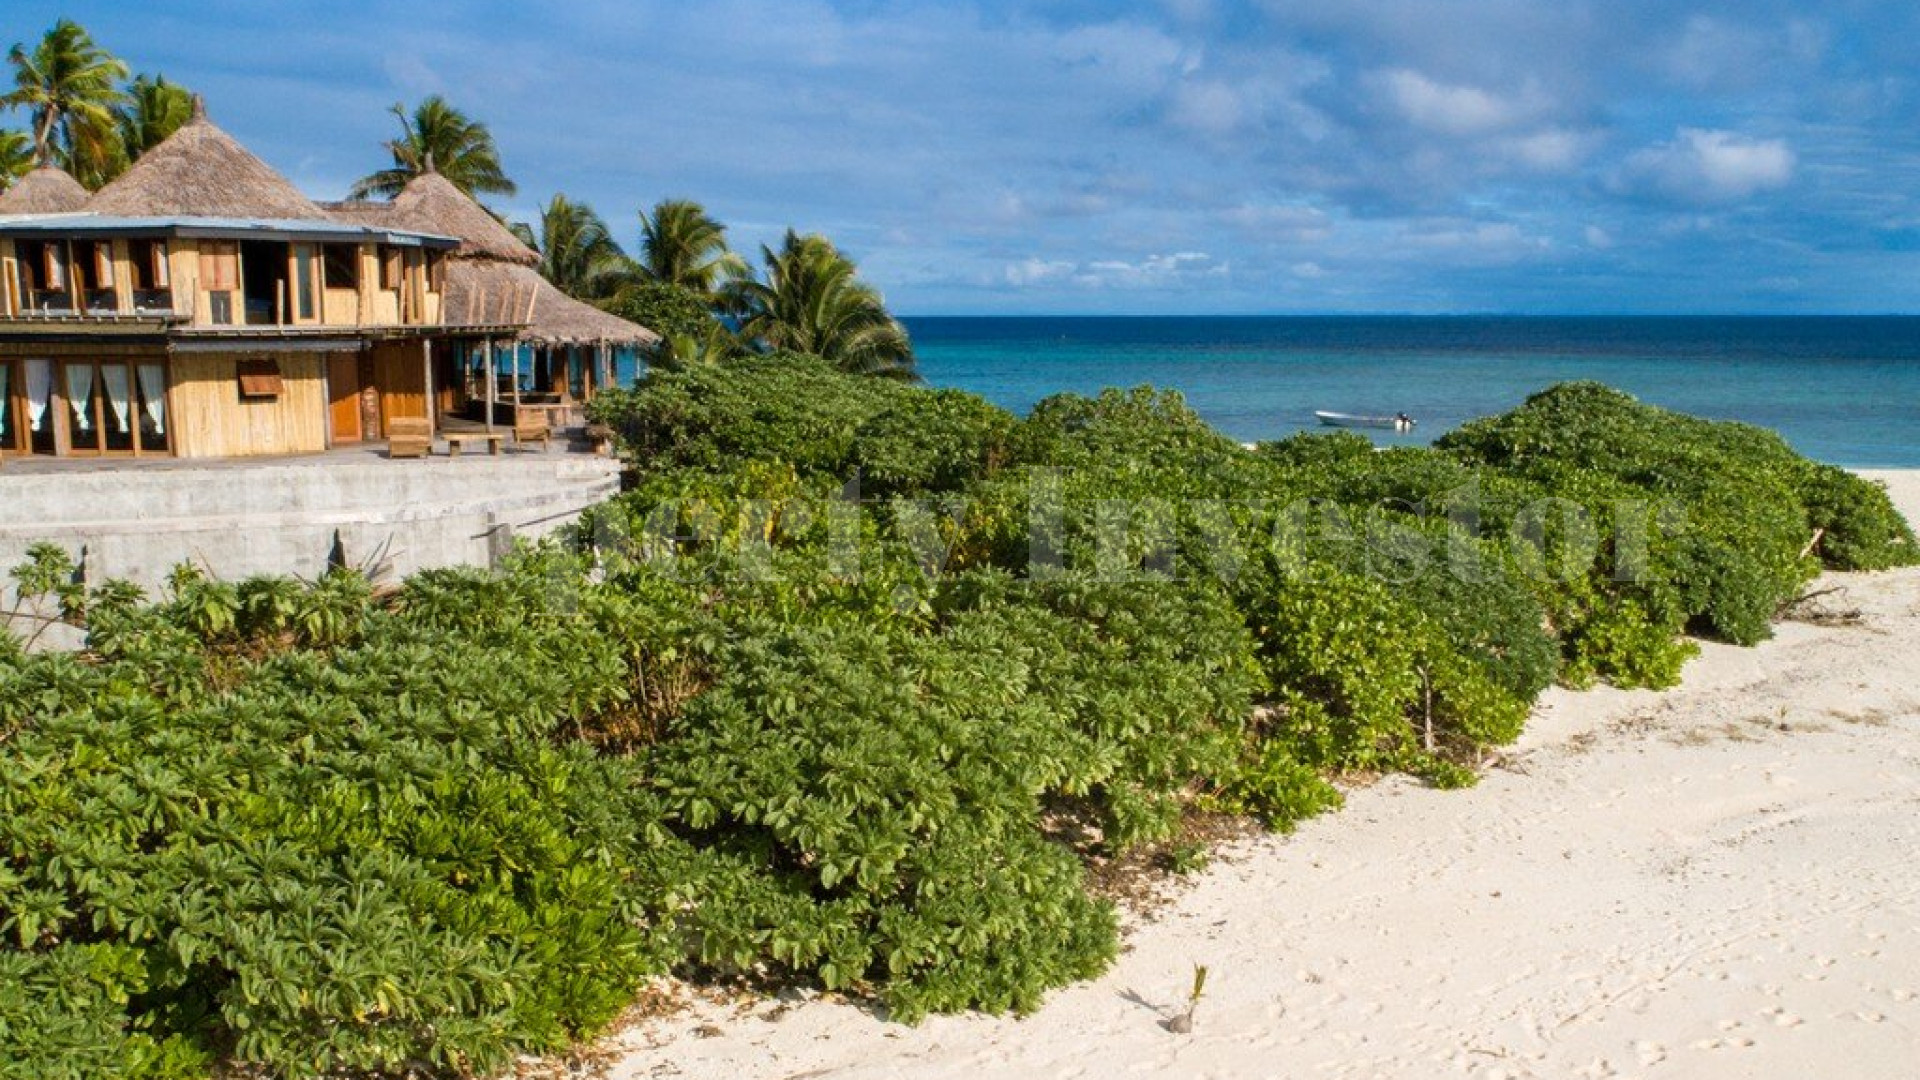 Продается живописный остров 4,8 га с резиденцией на Фиджи